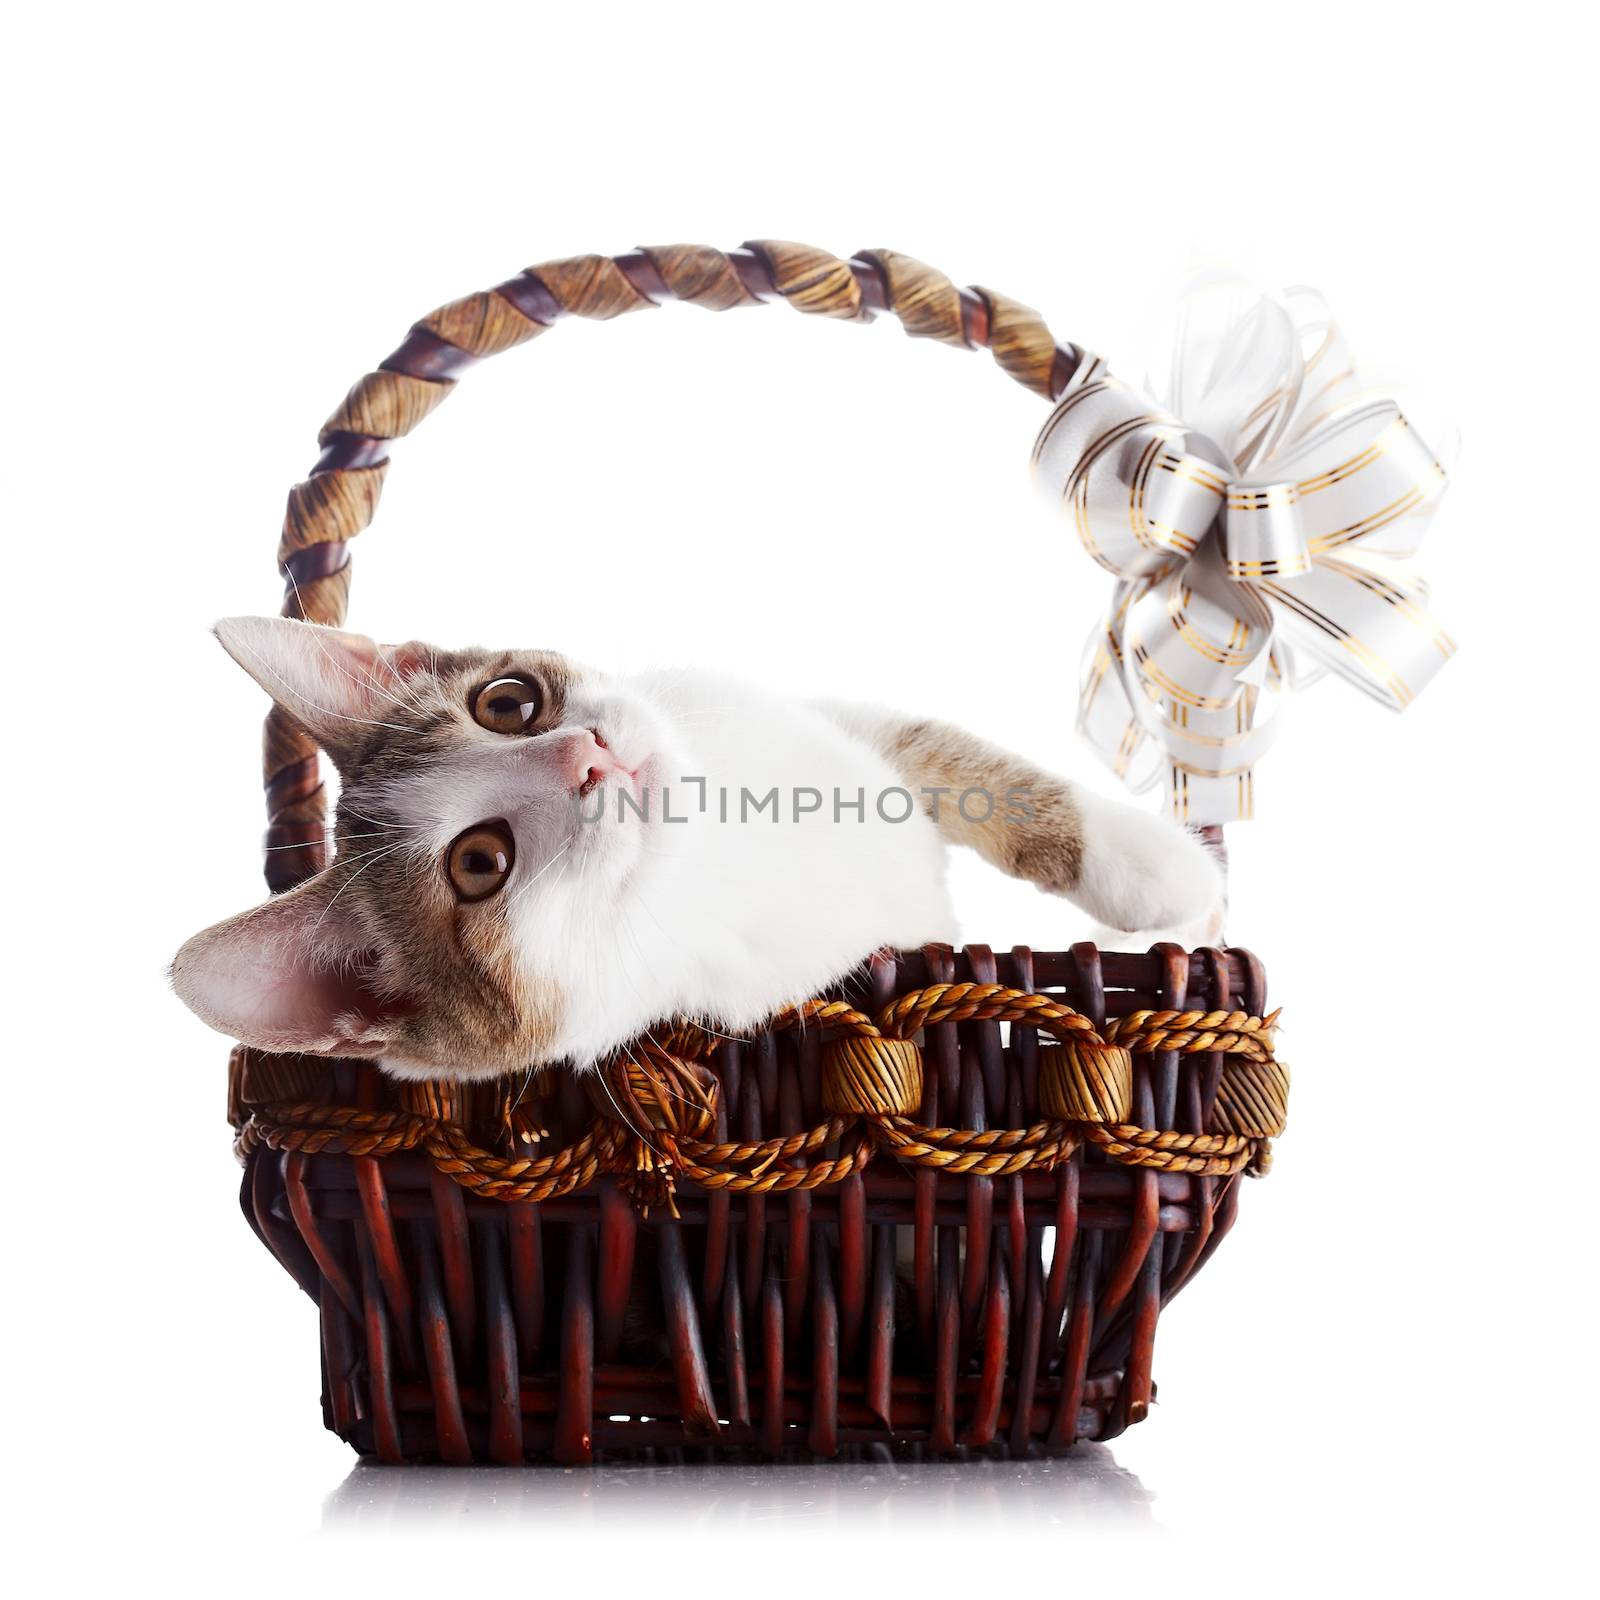 Kitten in a wattled basket with a bow. by Azaliya